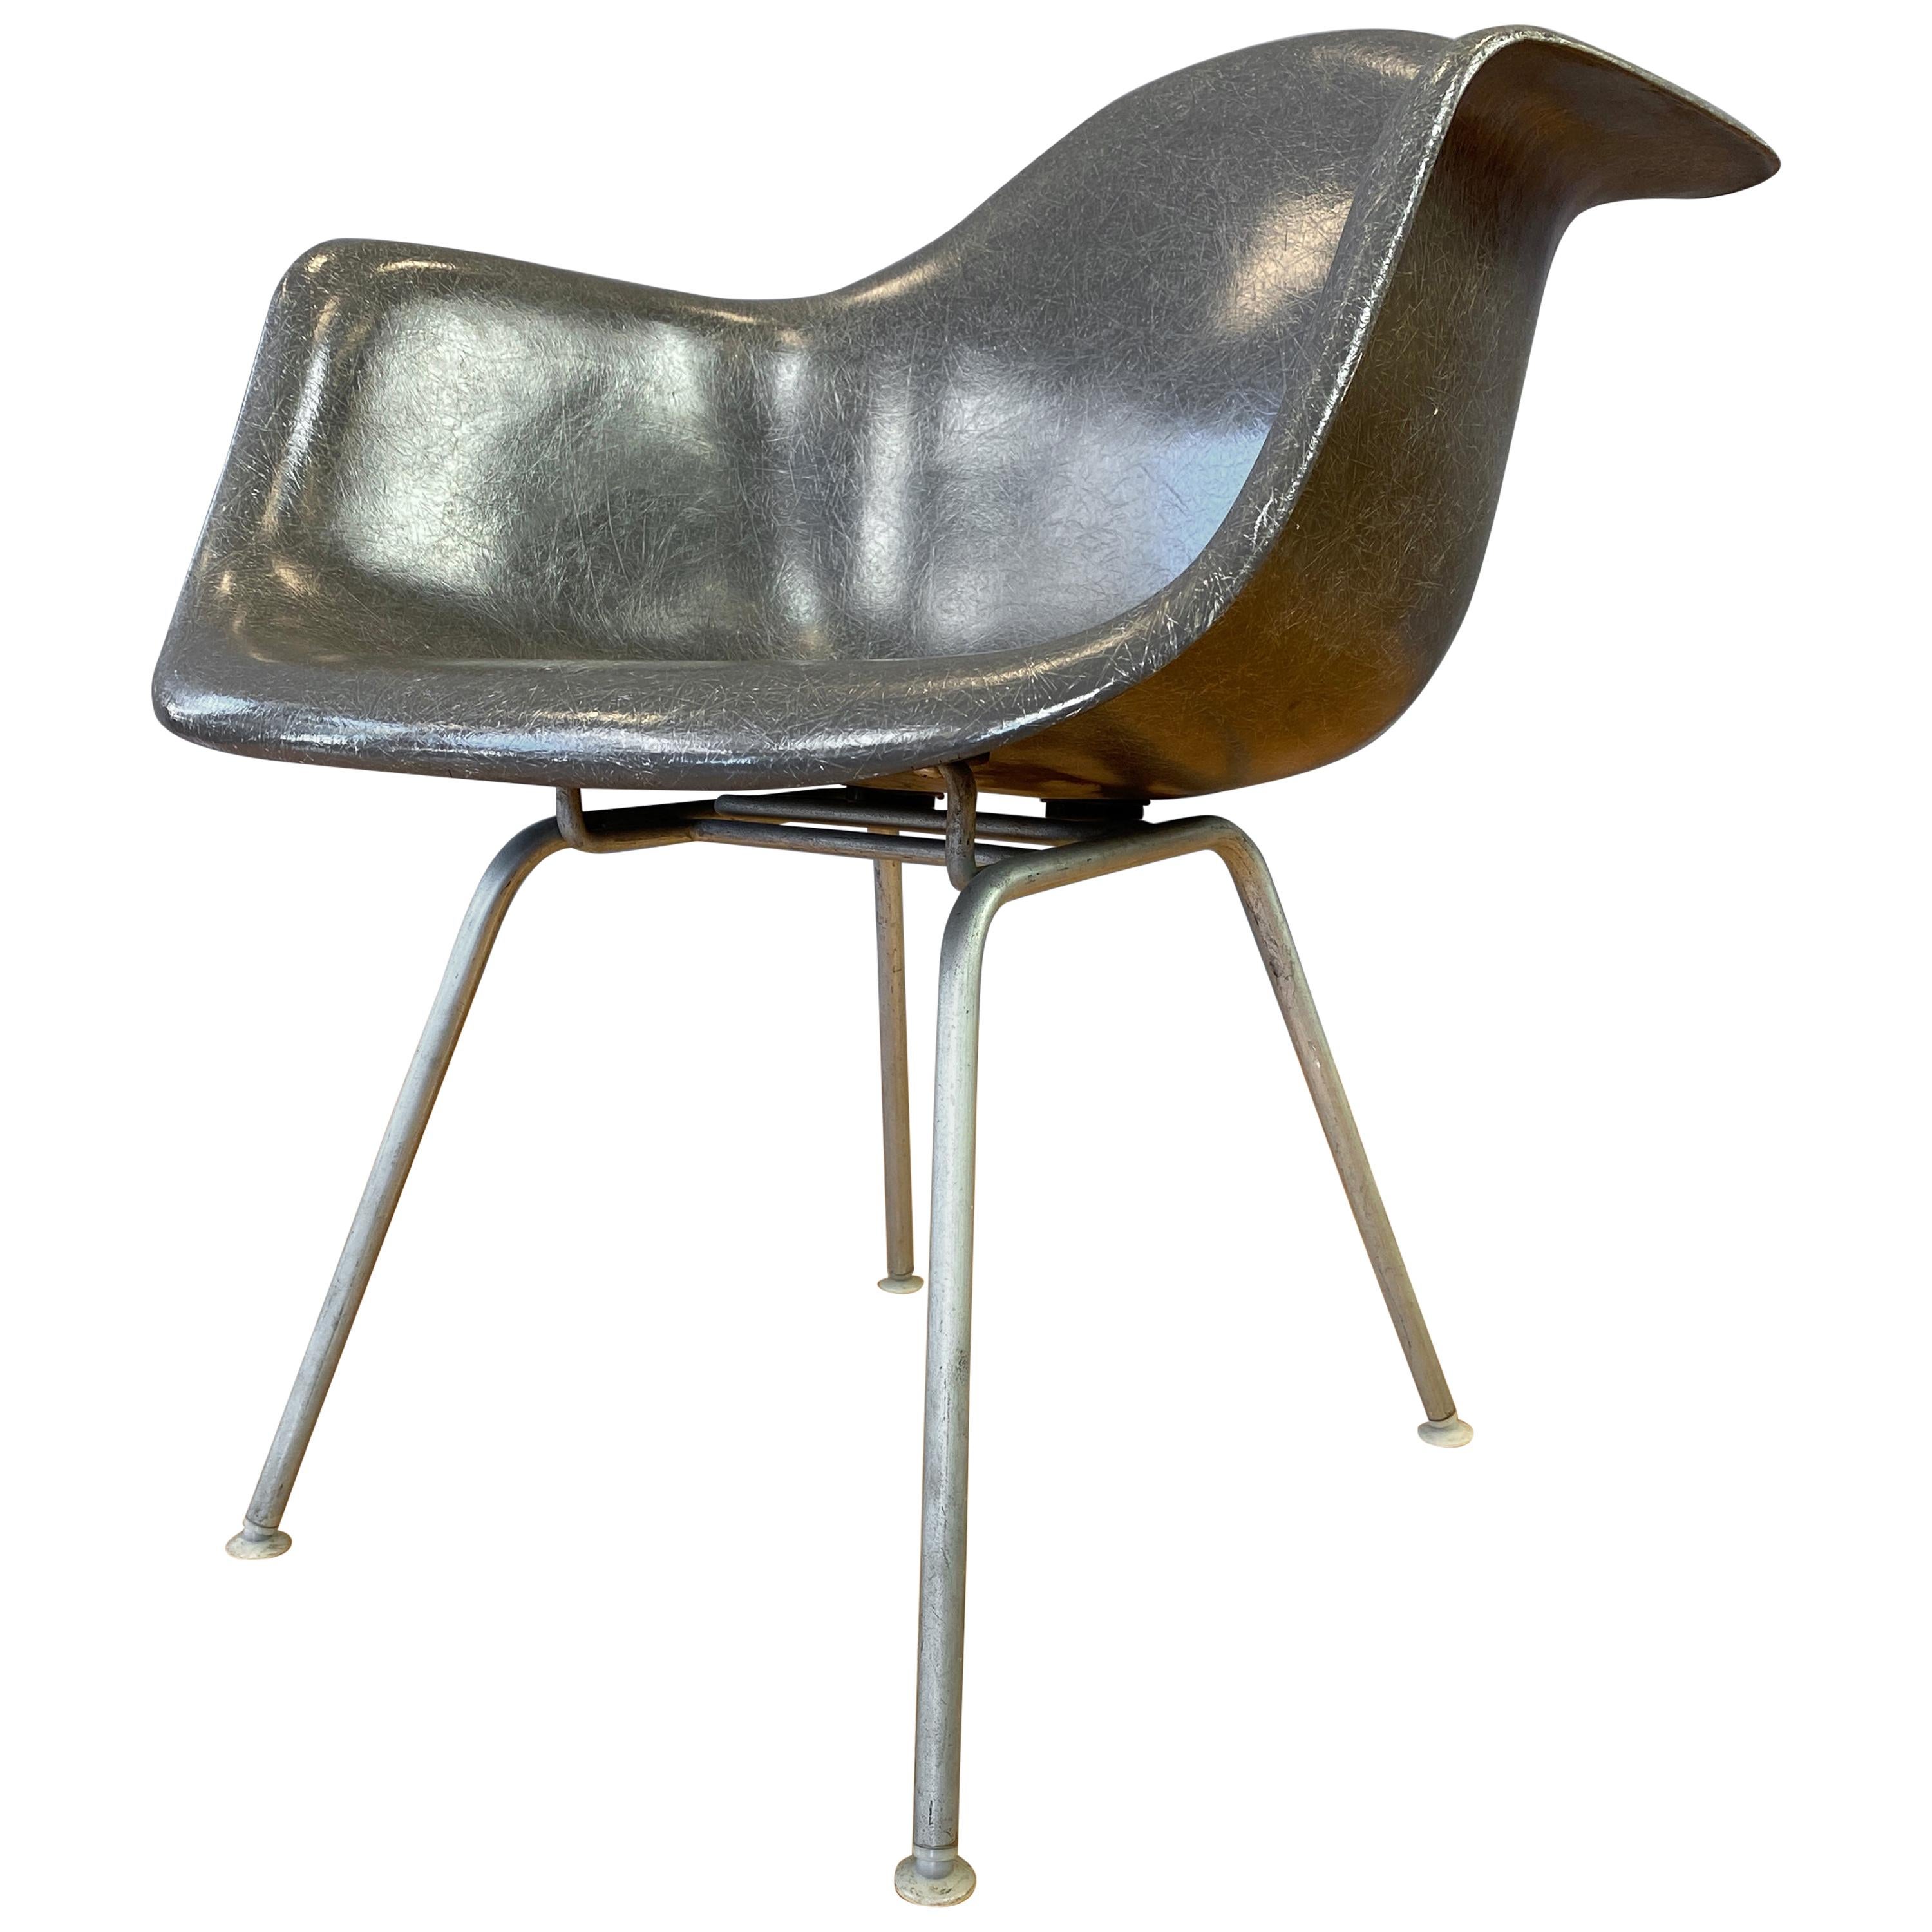 1960s Charles Eames Fiberglass Shell Armchair for Herman Miller